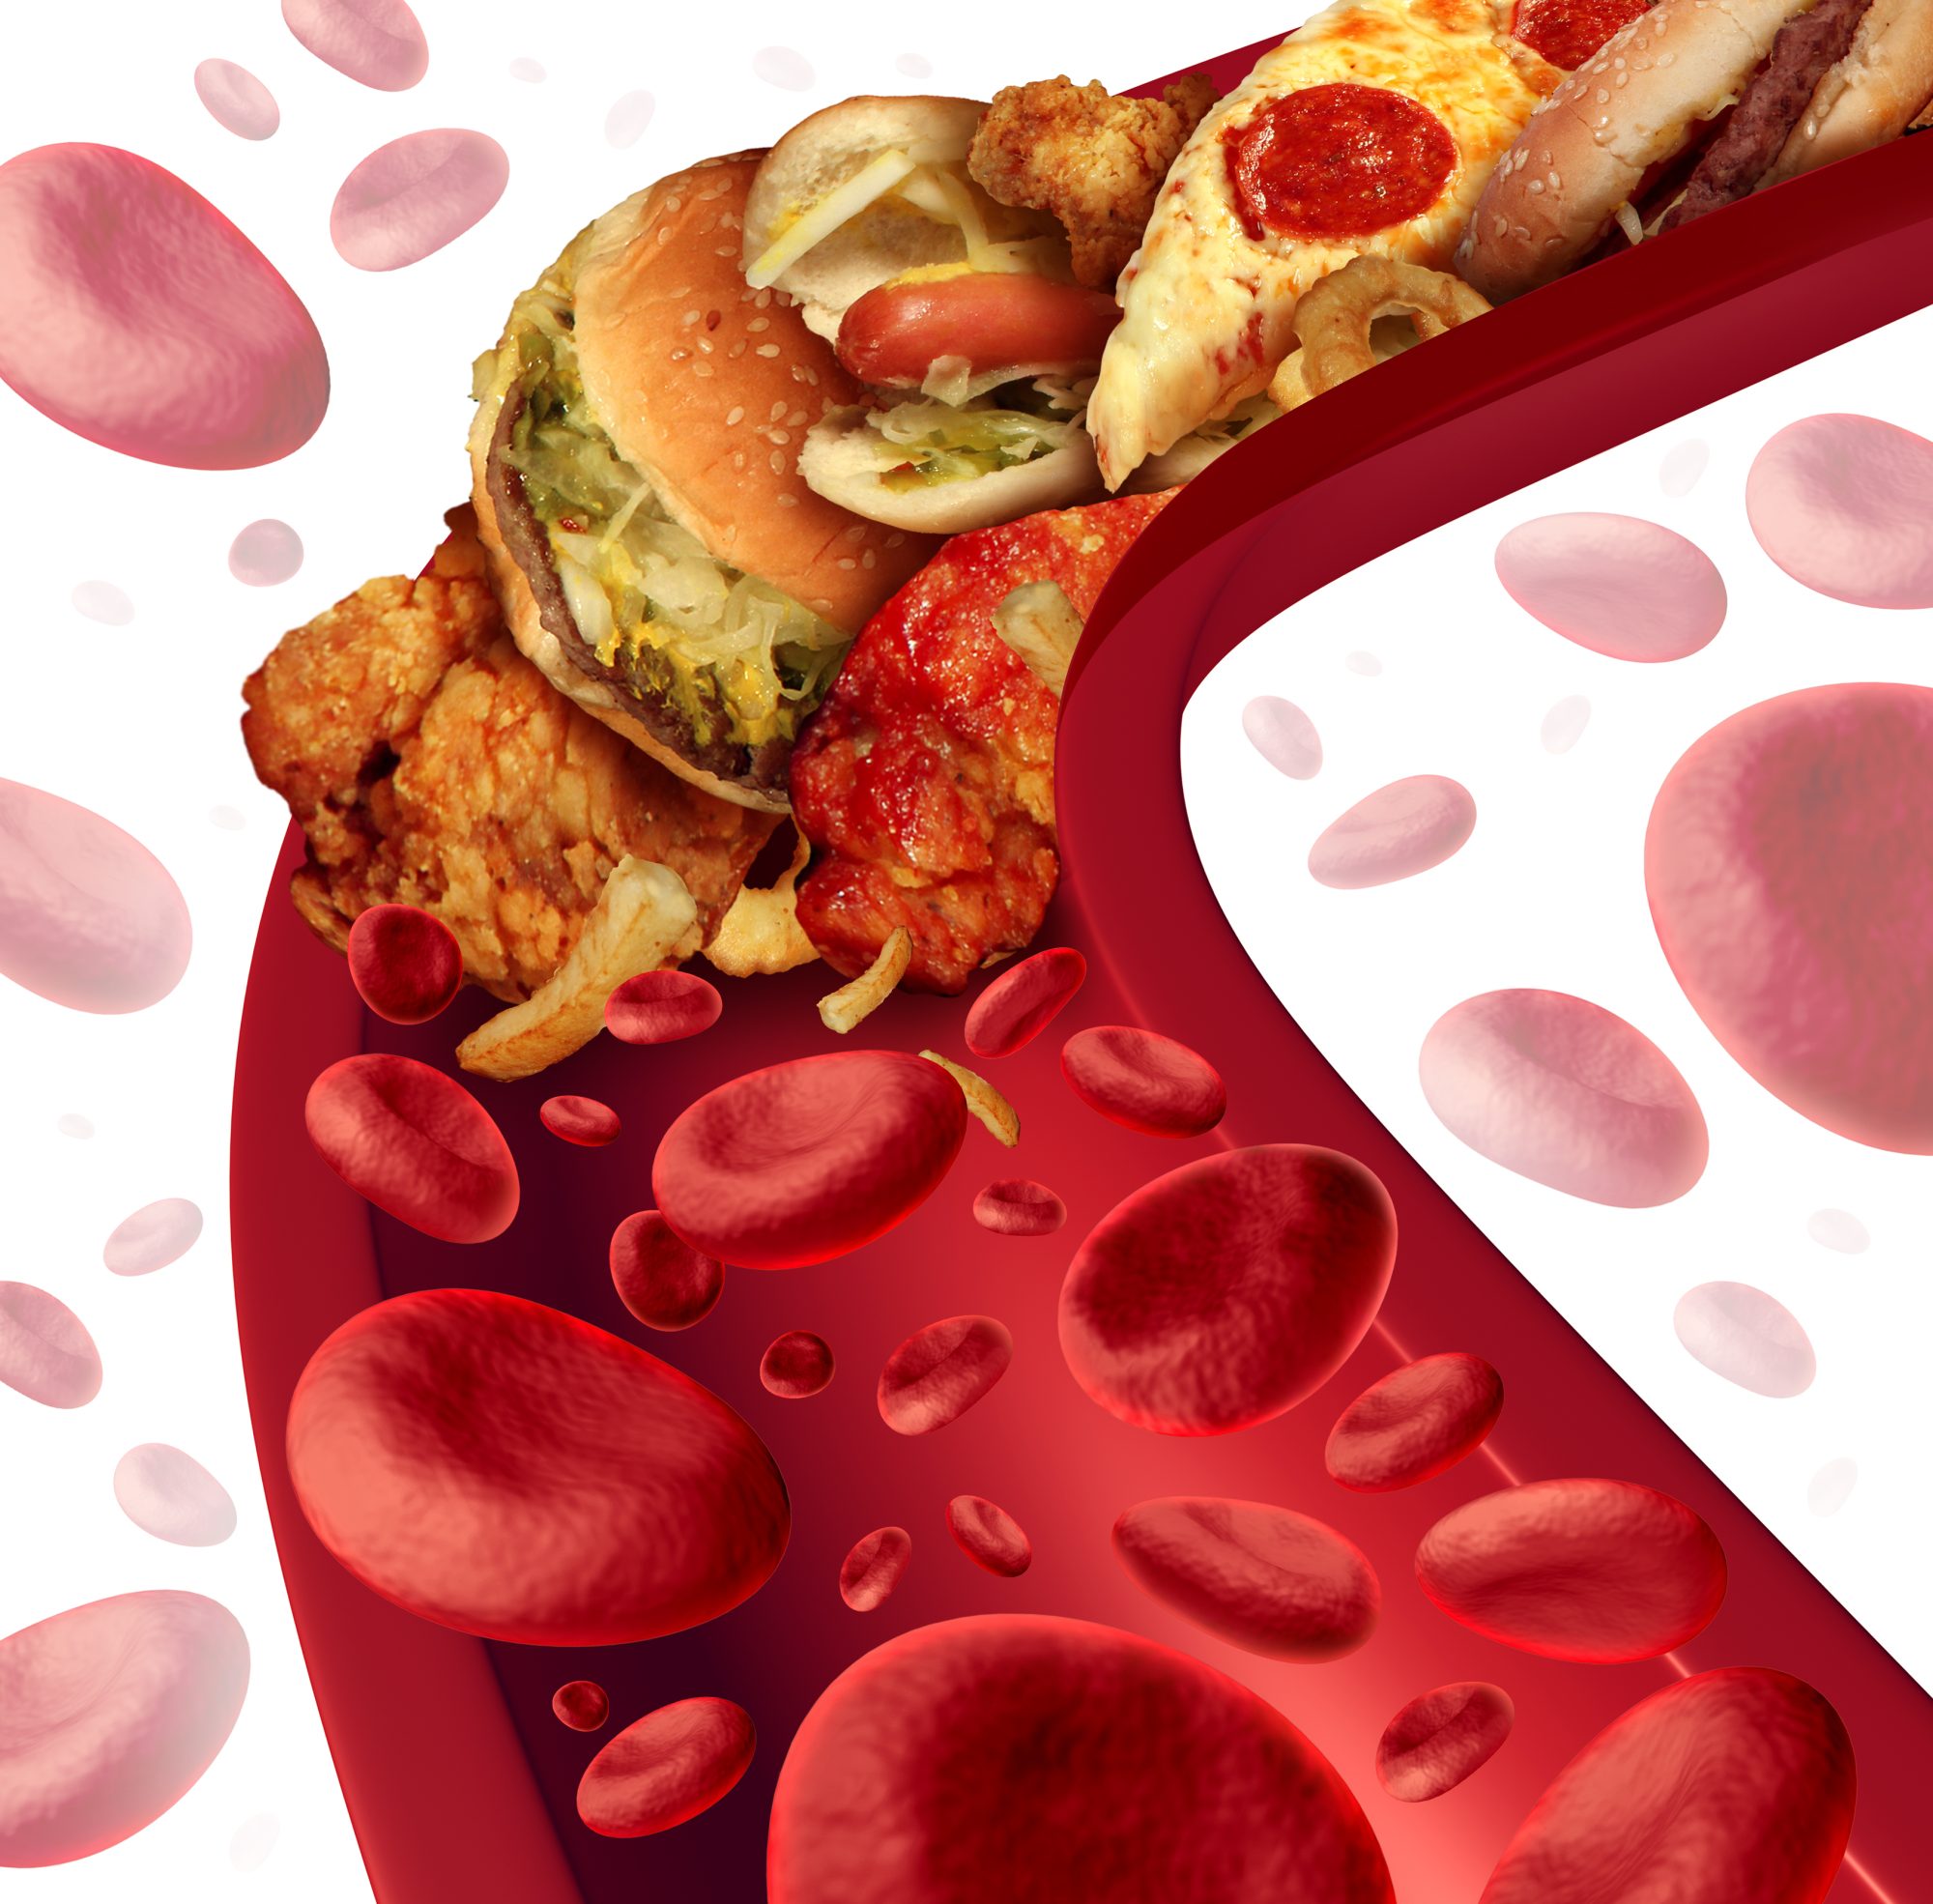 Featured image for “Colesterol marit – care sunt valorile care ar trebui sa ne alarmeze”